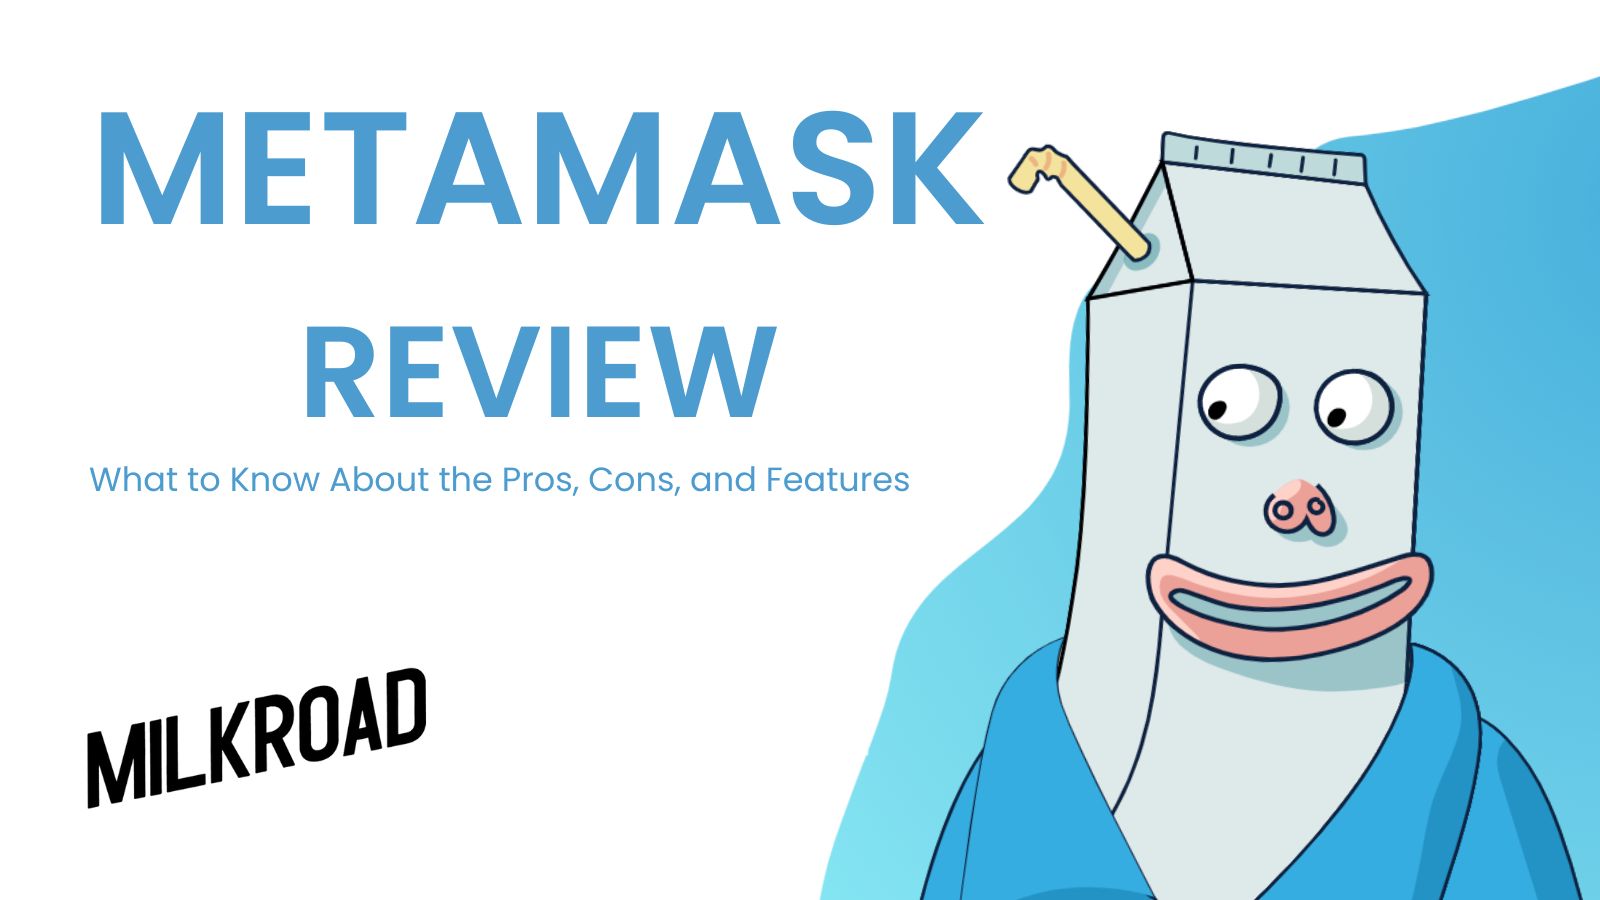 Metamask Review